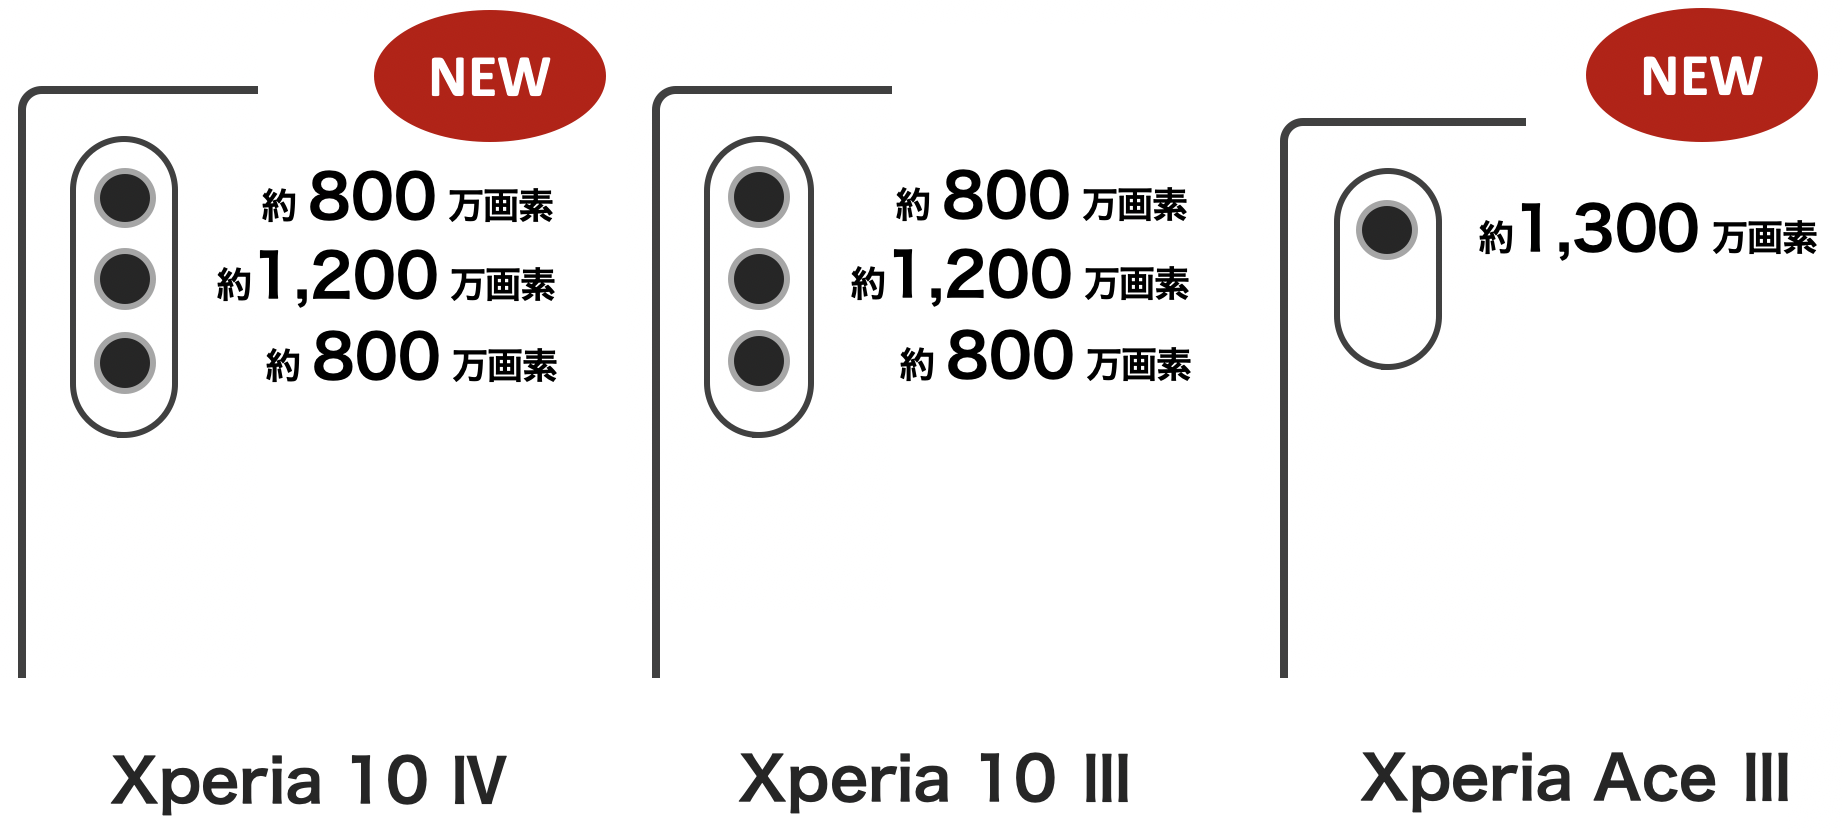 Xperia 10 IV / Xperia 10 III / Xperia Ace III のカメラ画素数比較